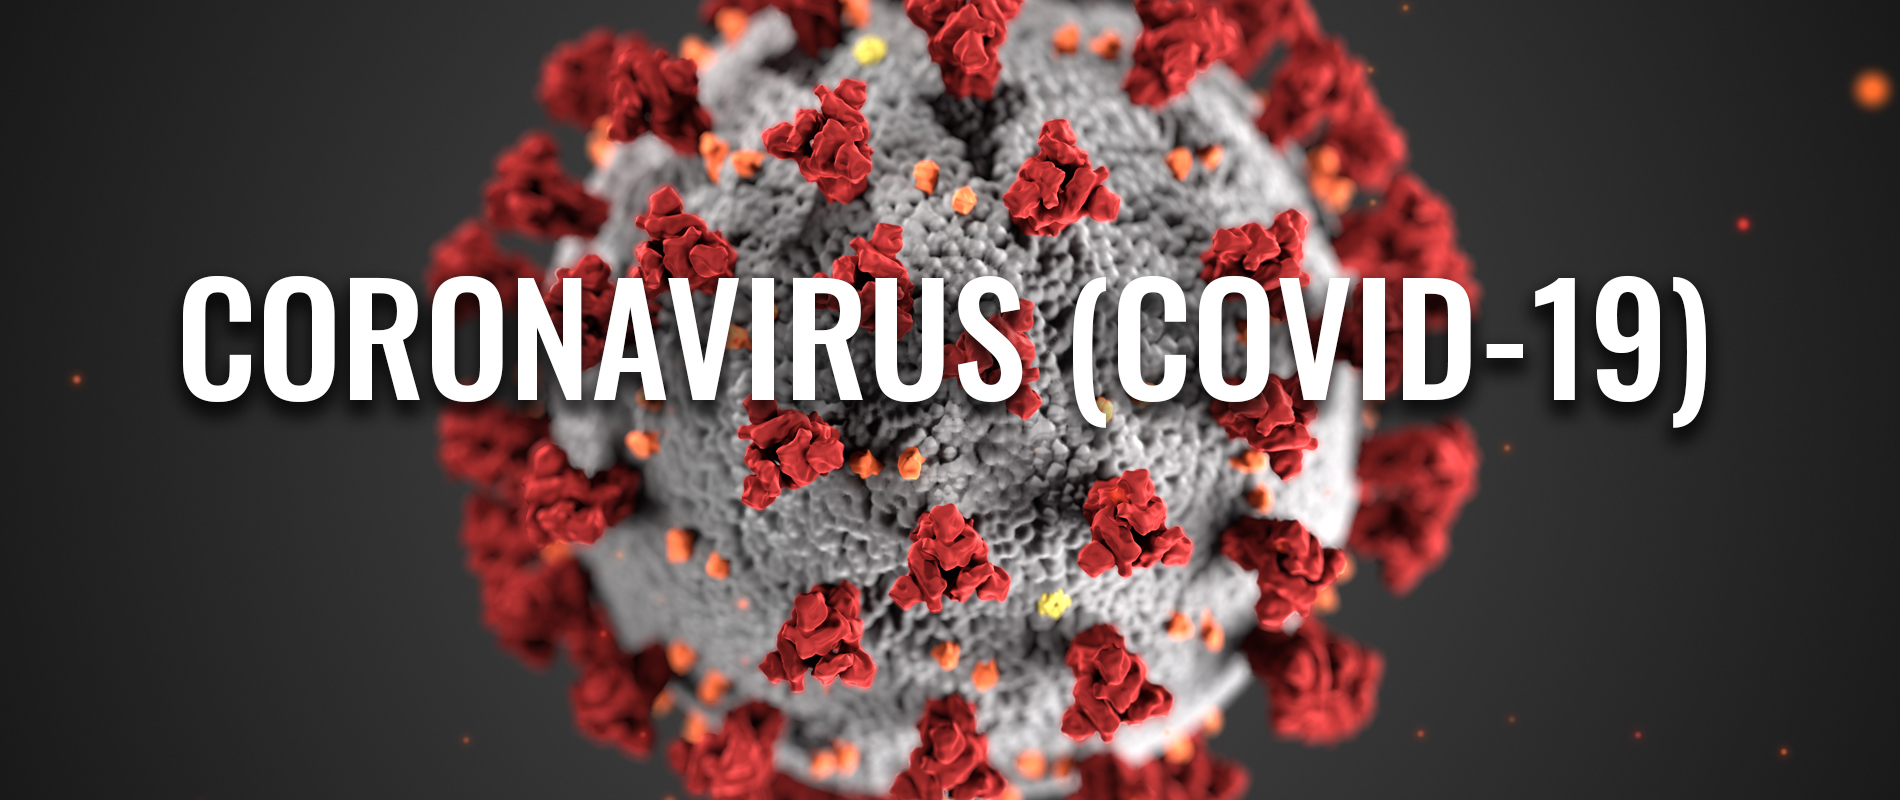 Coronavirus Resource Center - Harvard Health